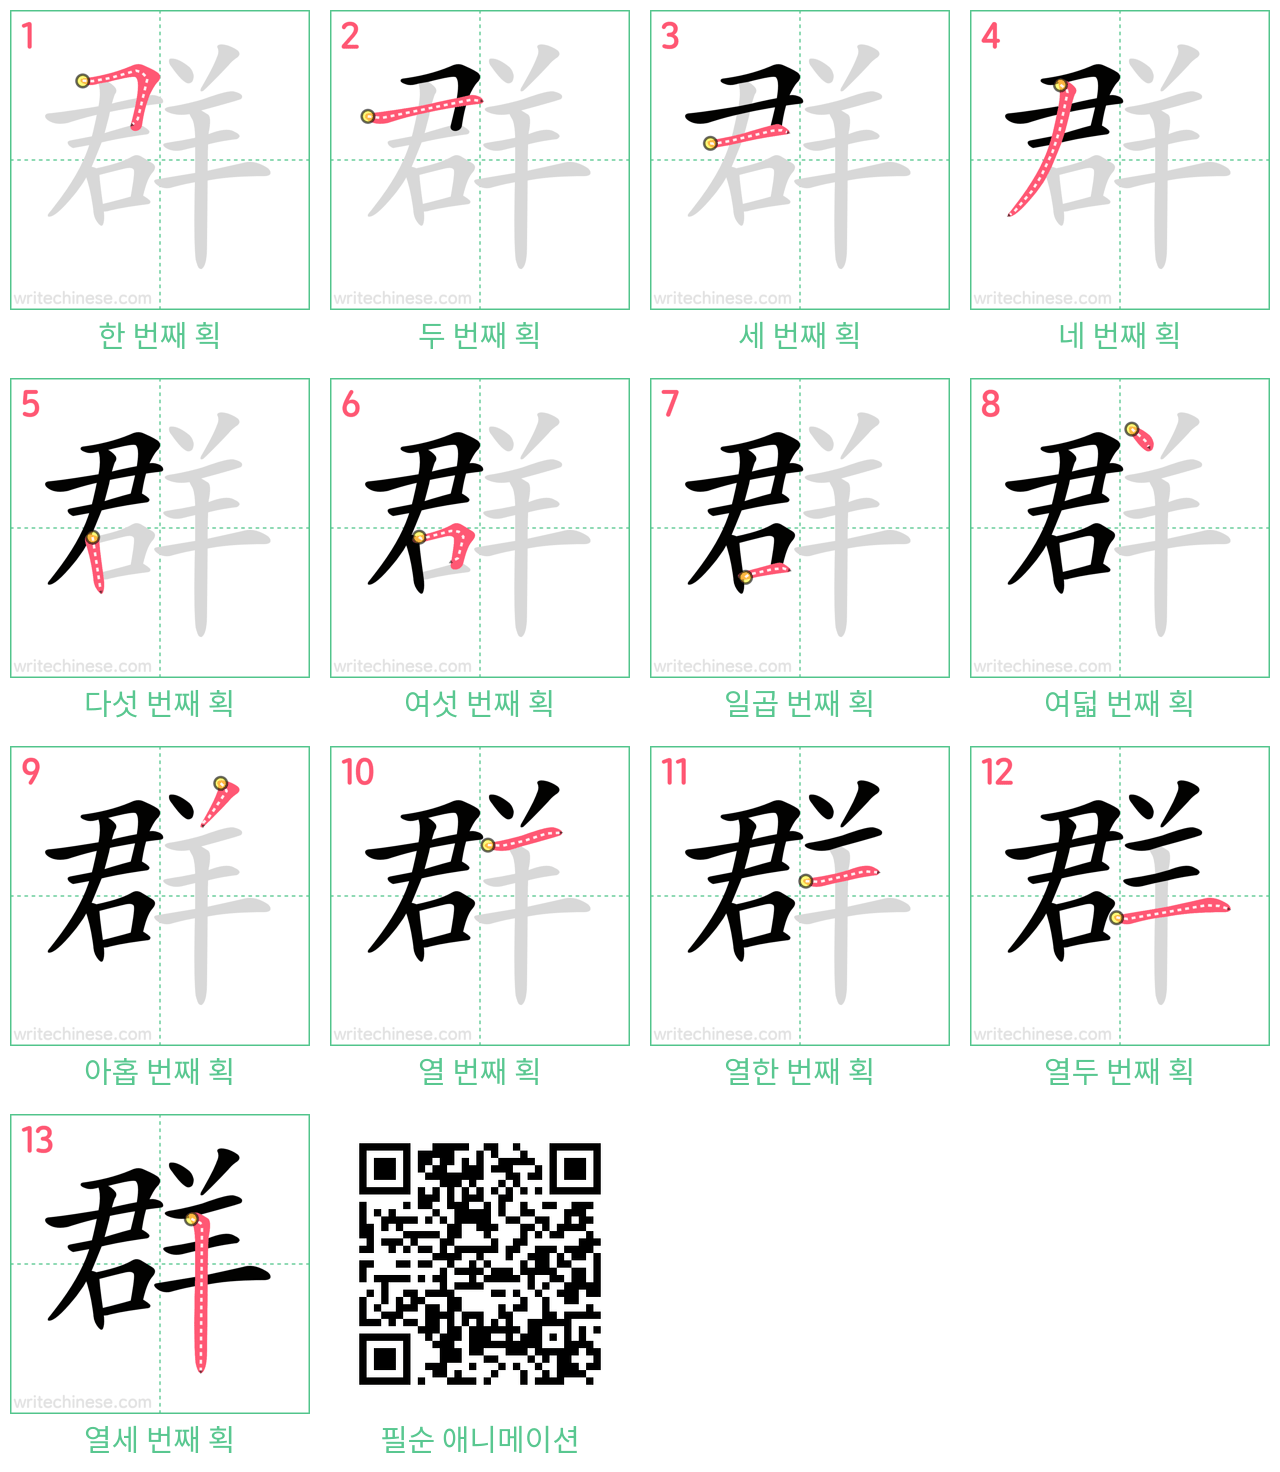 群 step-by-step stroke order diagrams